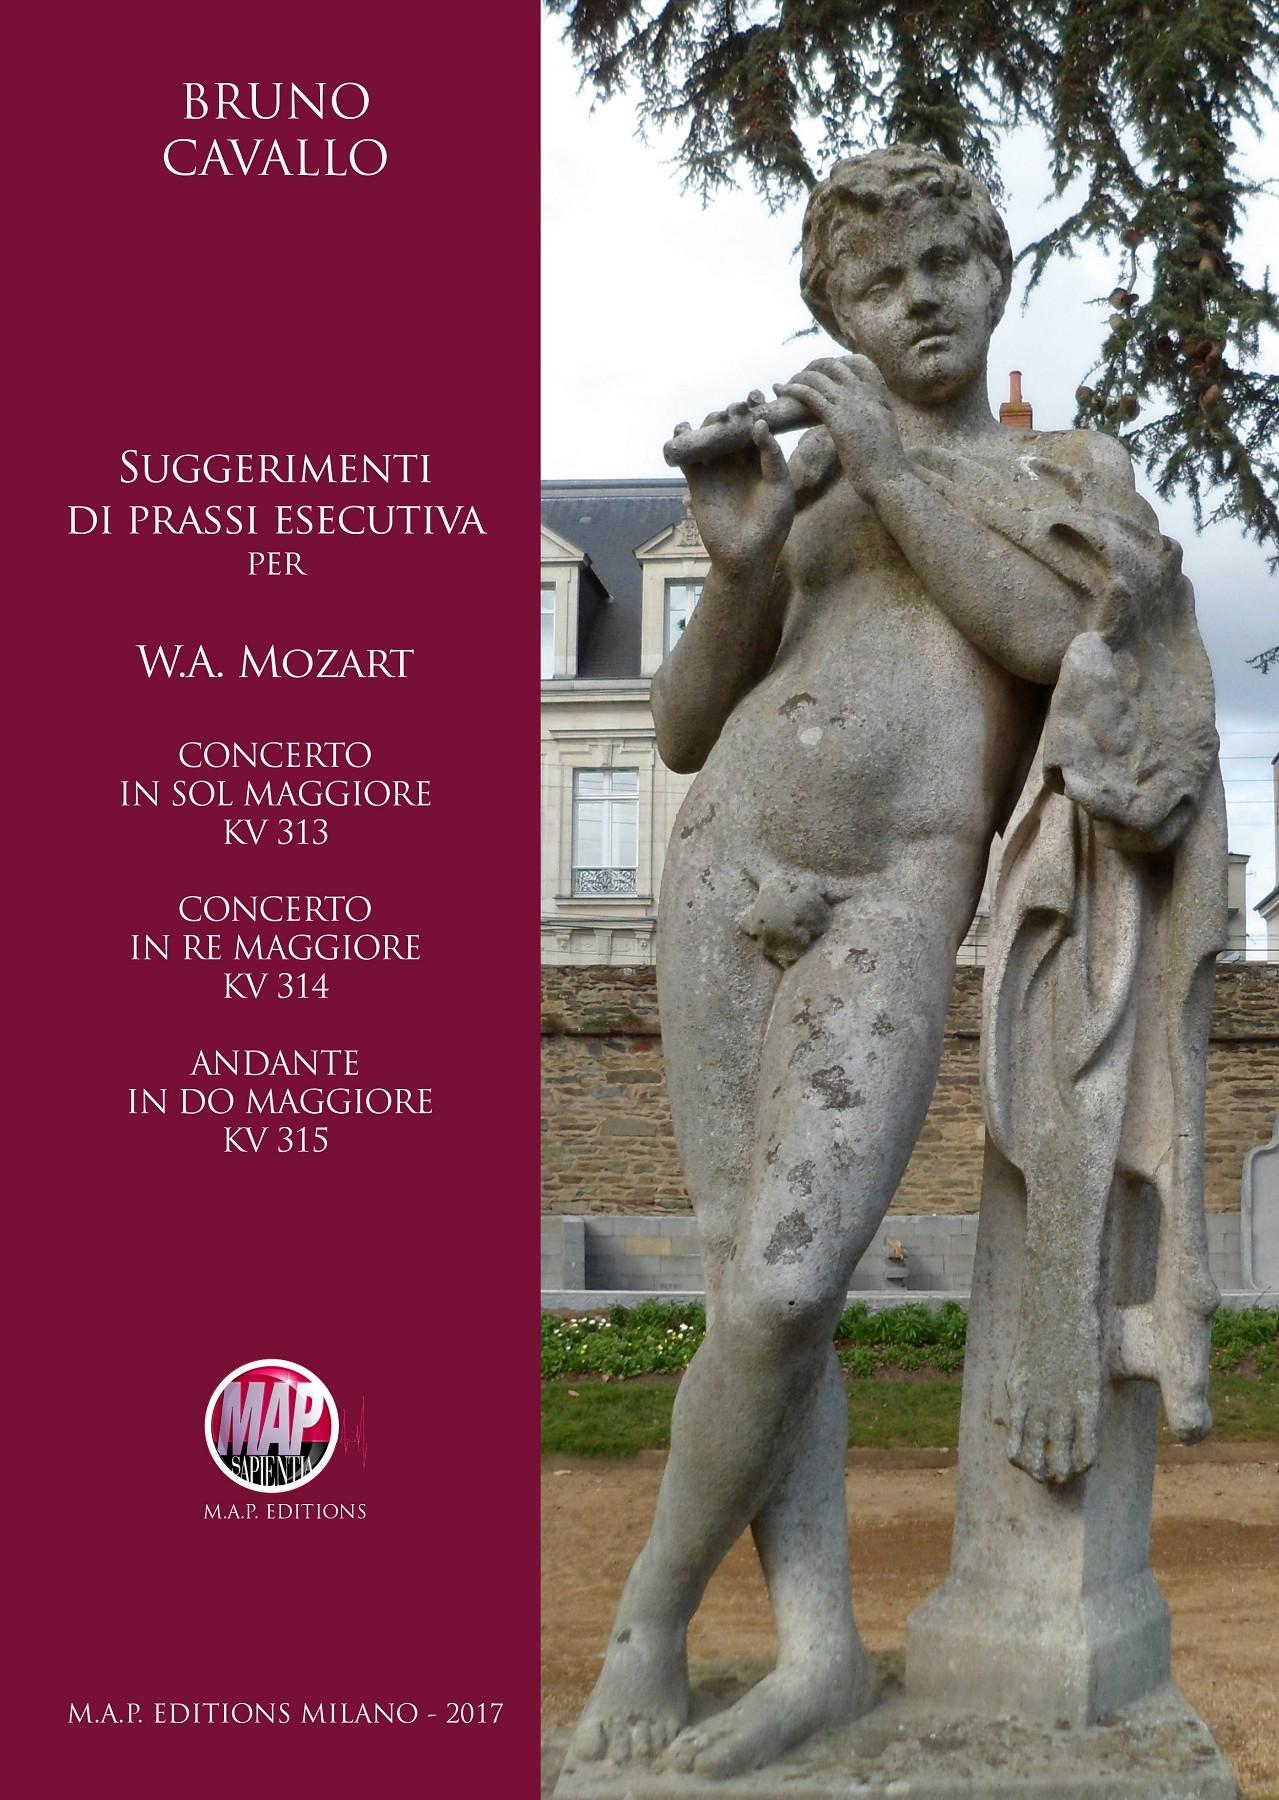 Suggerimenti di prassi esecutiva per W.A.Mozart (KV313, KV314 e KV315) - Bruno Cavallo | Suono Flauti